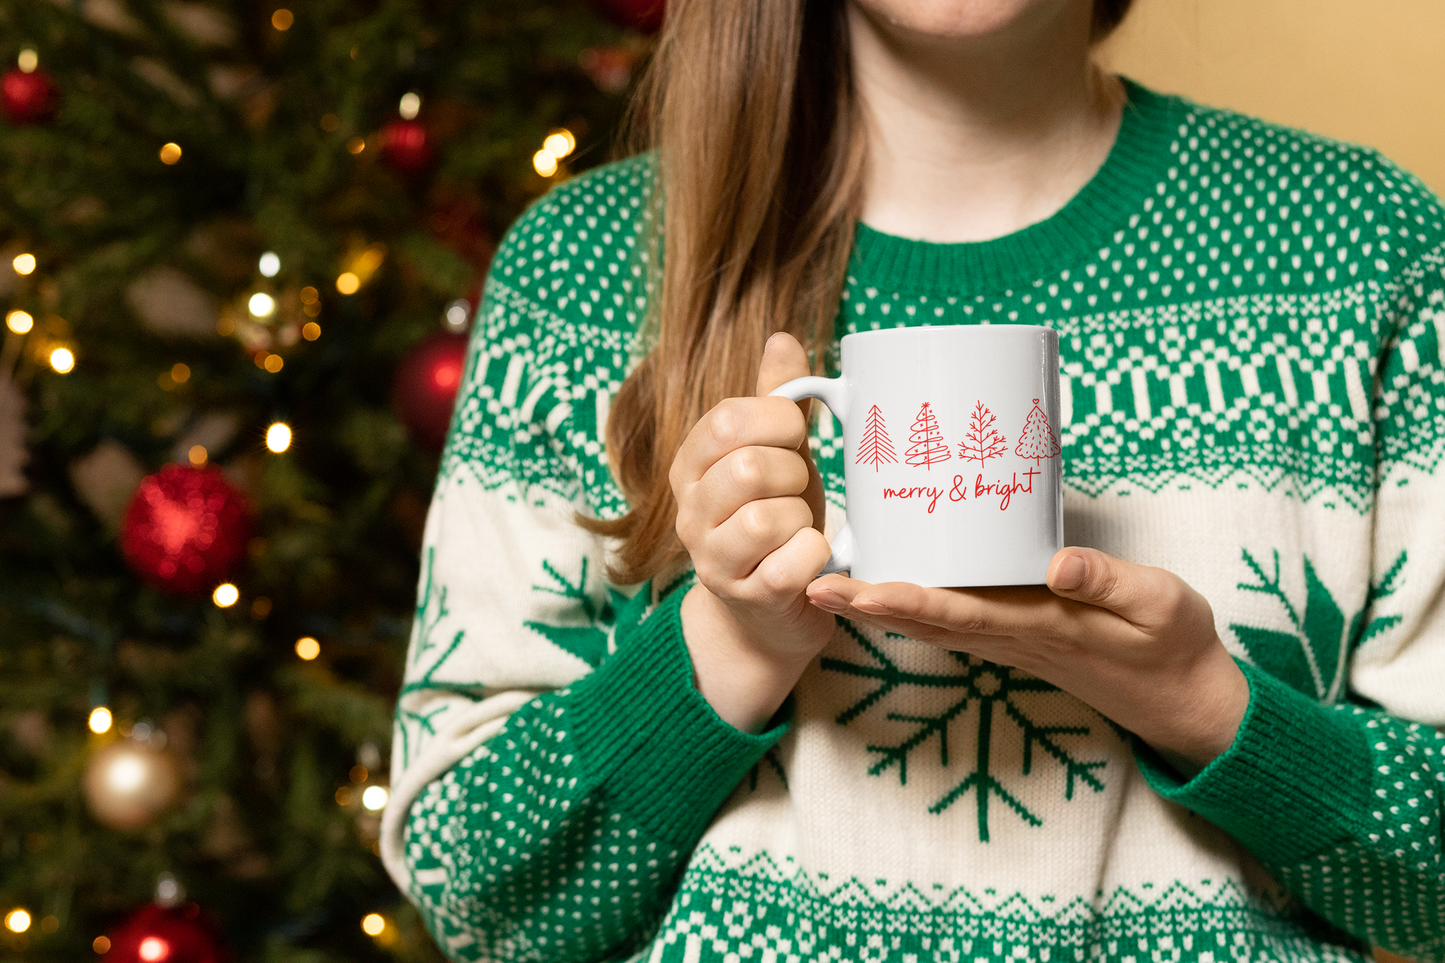 Merry & Bright Coffee Mug